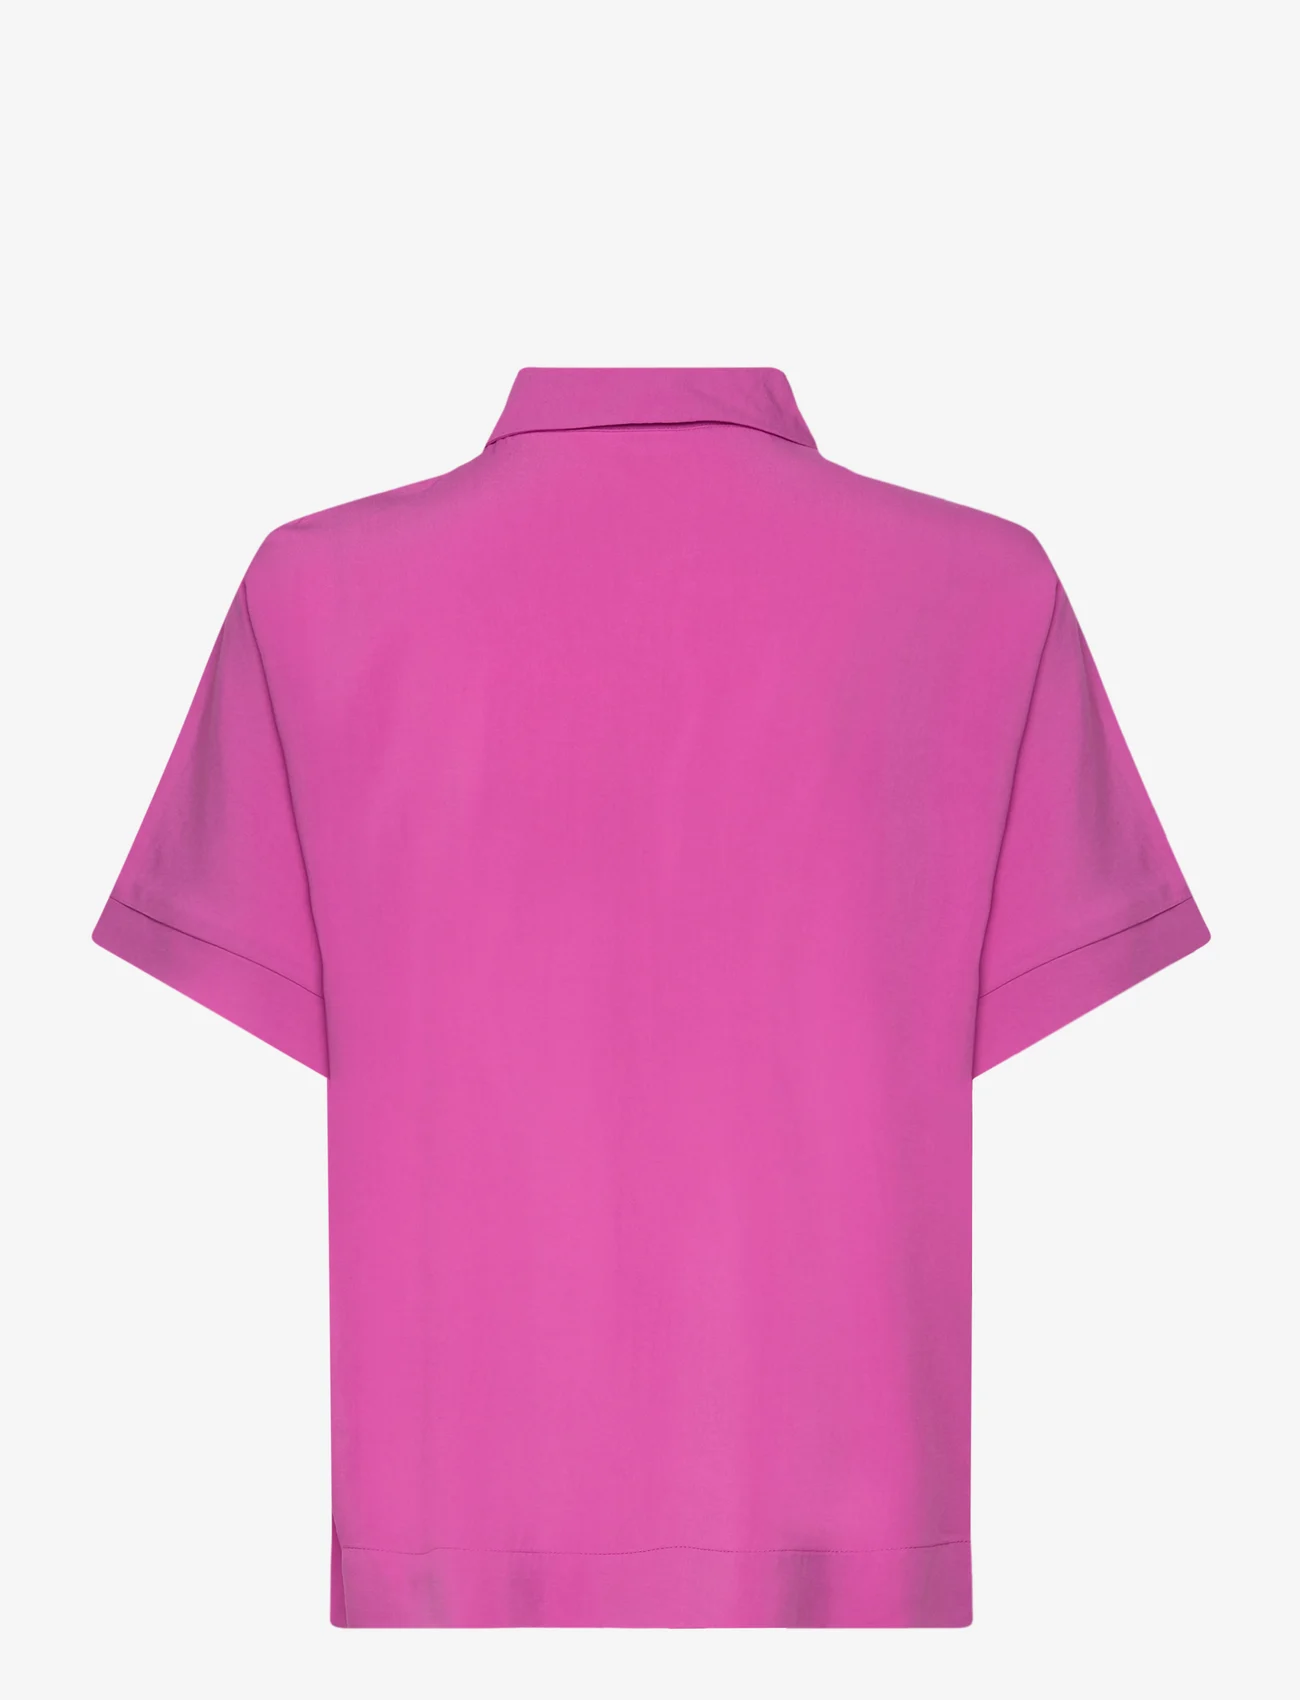 Soft Rebels - SRFreedom SS Shirt - kortærmede skjorter - purple orchid - 1